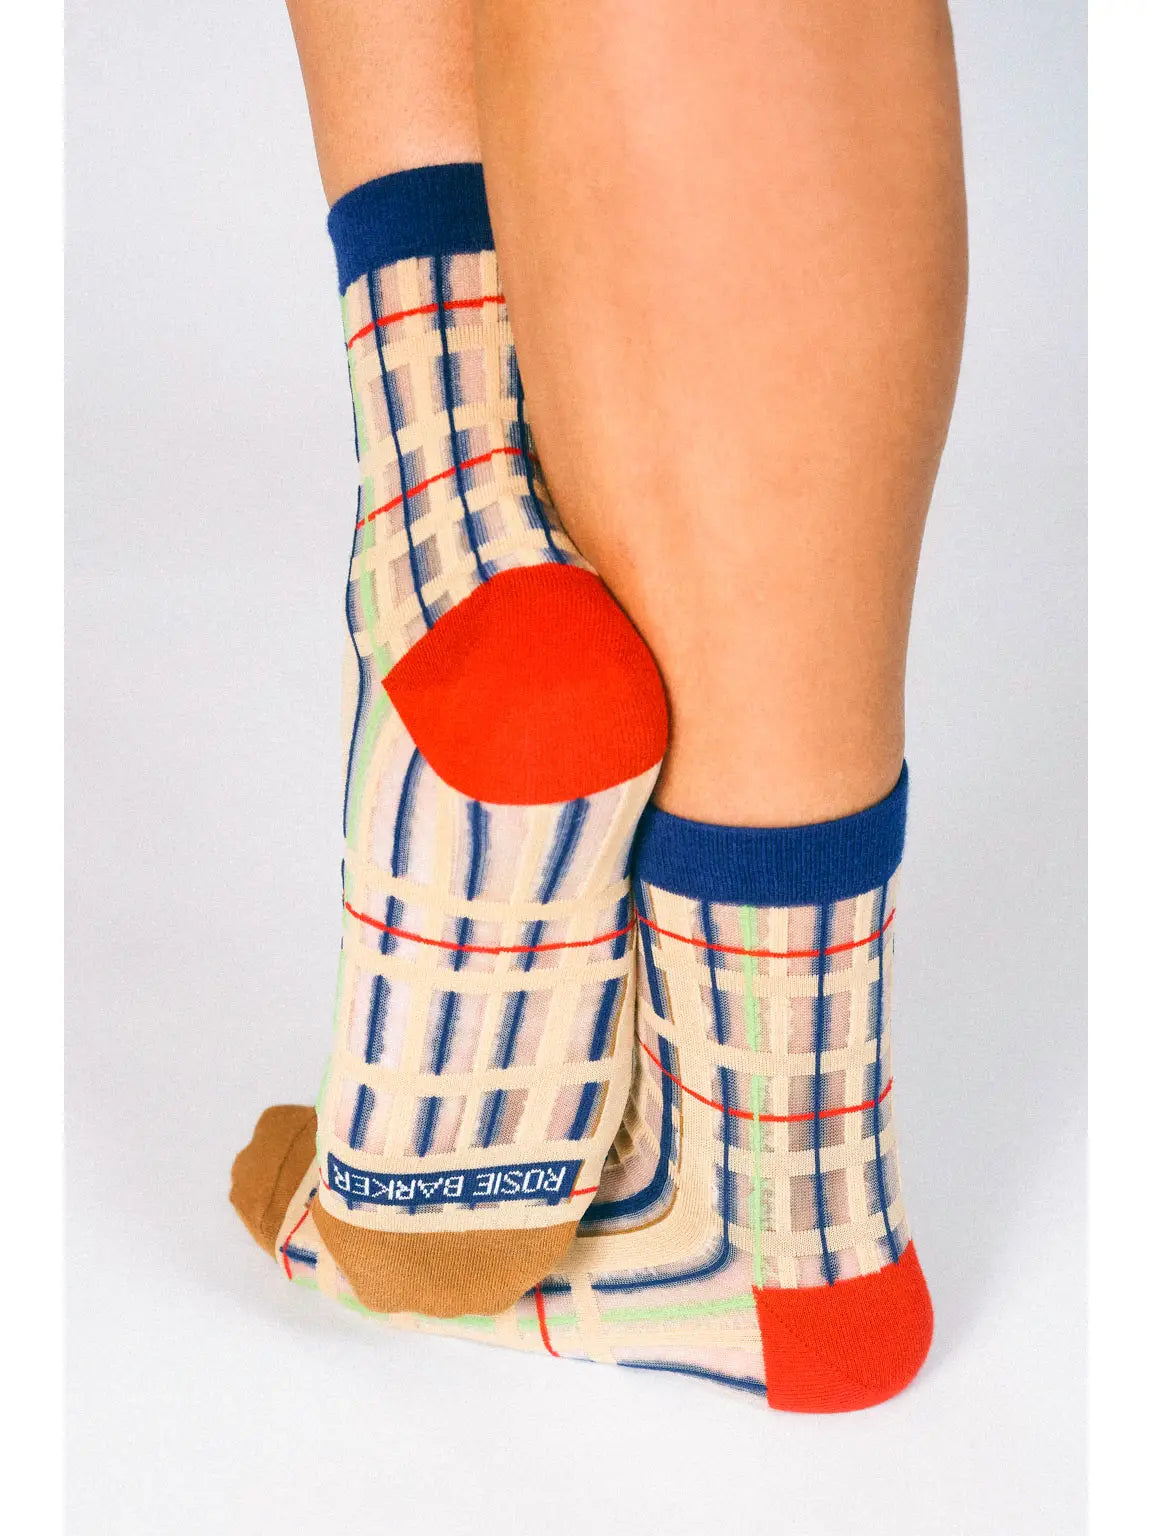 Sheer Grid Ankle Socks by Rosie Barker